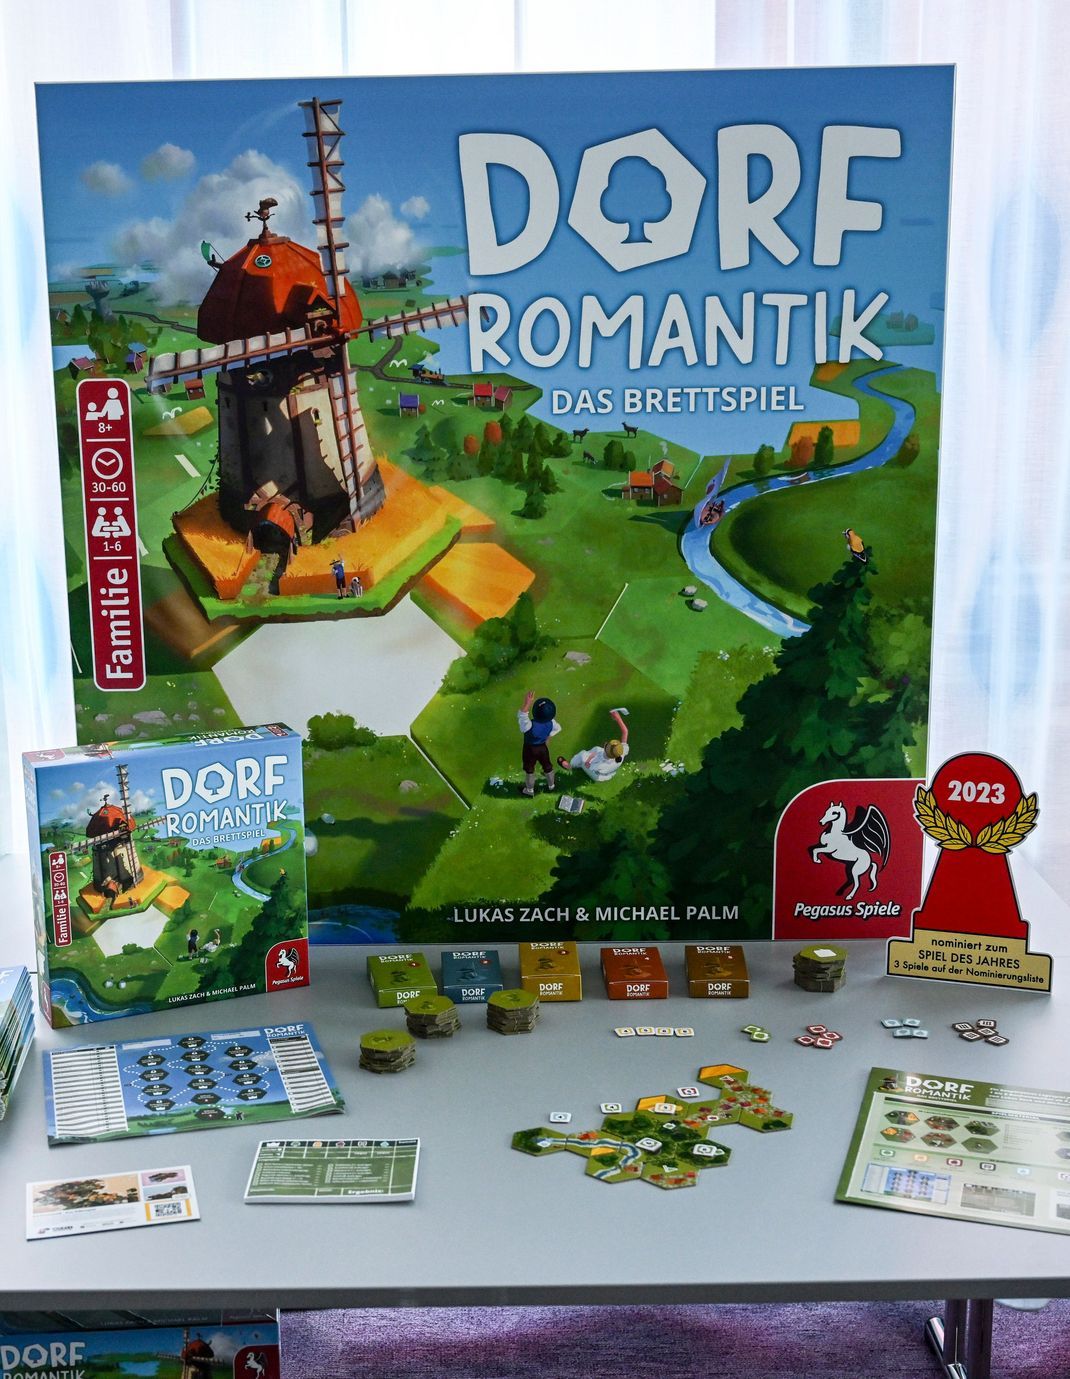 Das Spiel "Dorfromantik: Das Brettspiel" ist zum "Spiel des Jahres 2023" gewählt worden. Der Kritikerpreis "Spiel des Jahres" ist ein vom Verein Spiel des Jahres e.V. seit 1979 vergebener Spielepreis für deutschsprachige Brett- und Kartenspiel-Neuheiten.